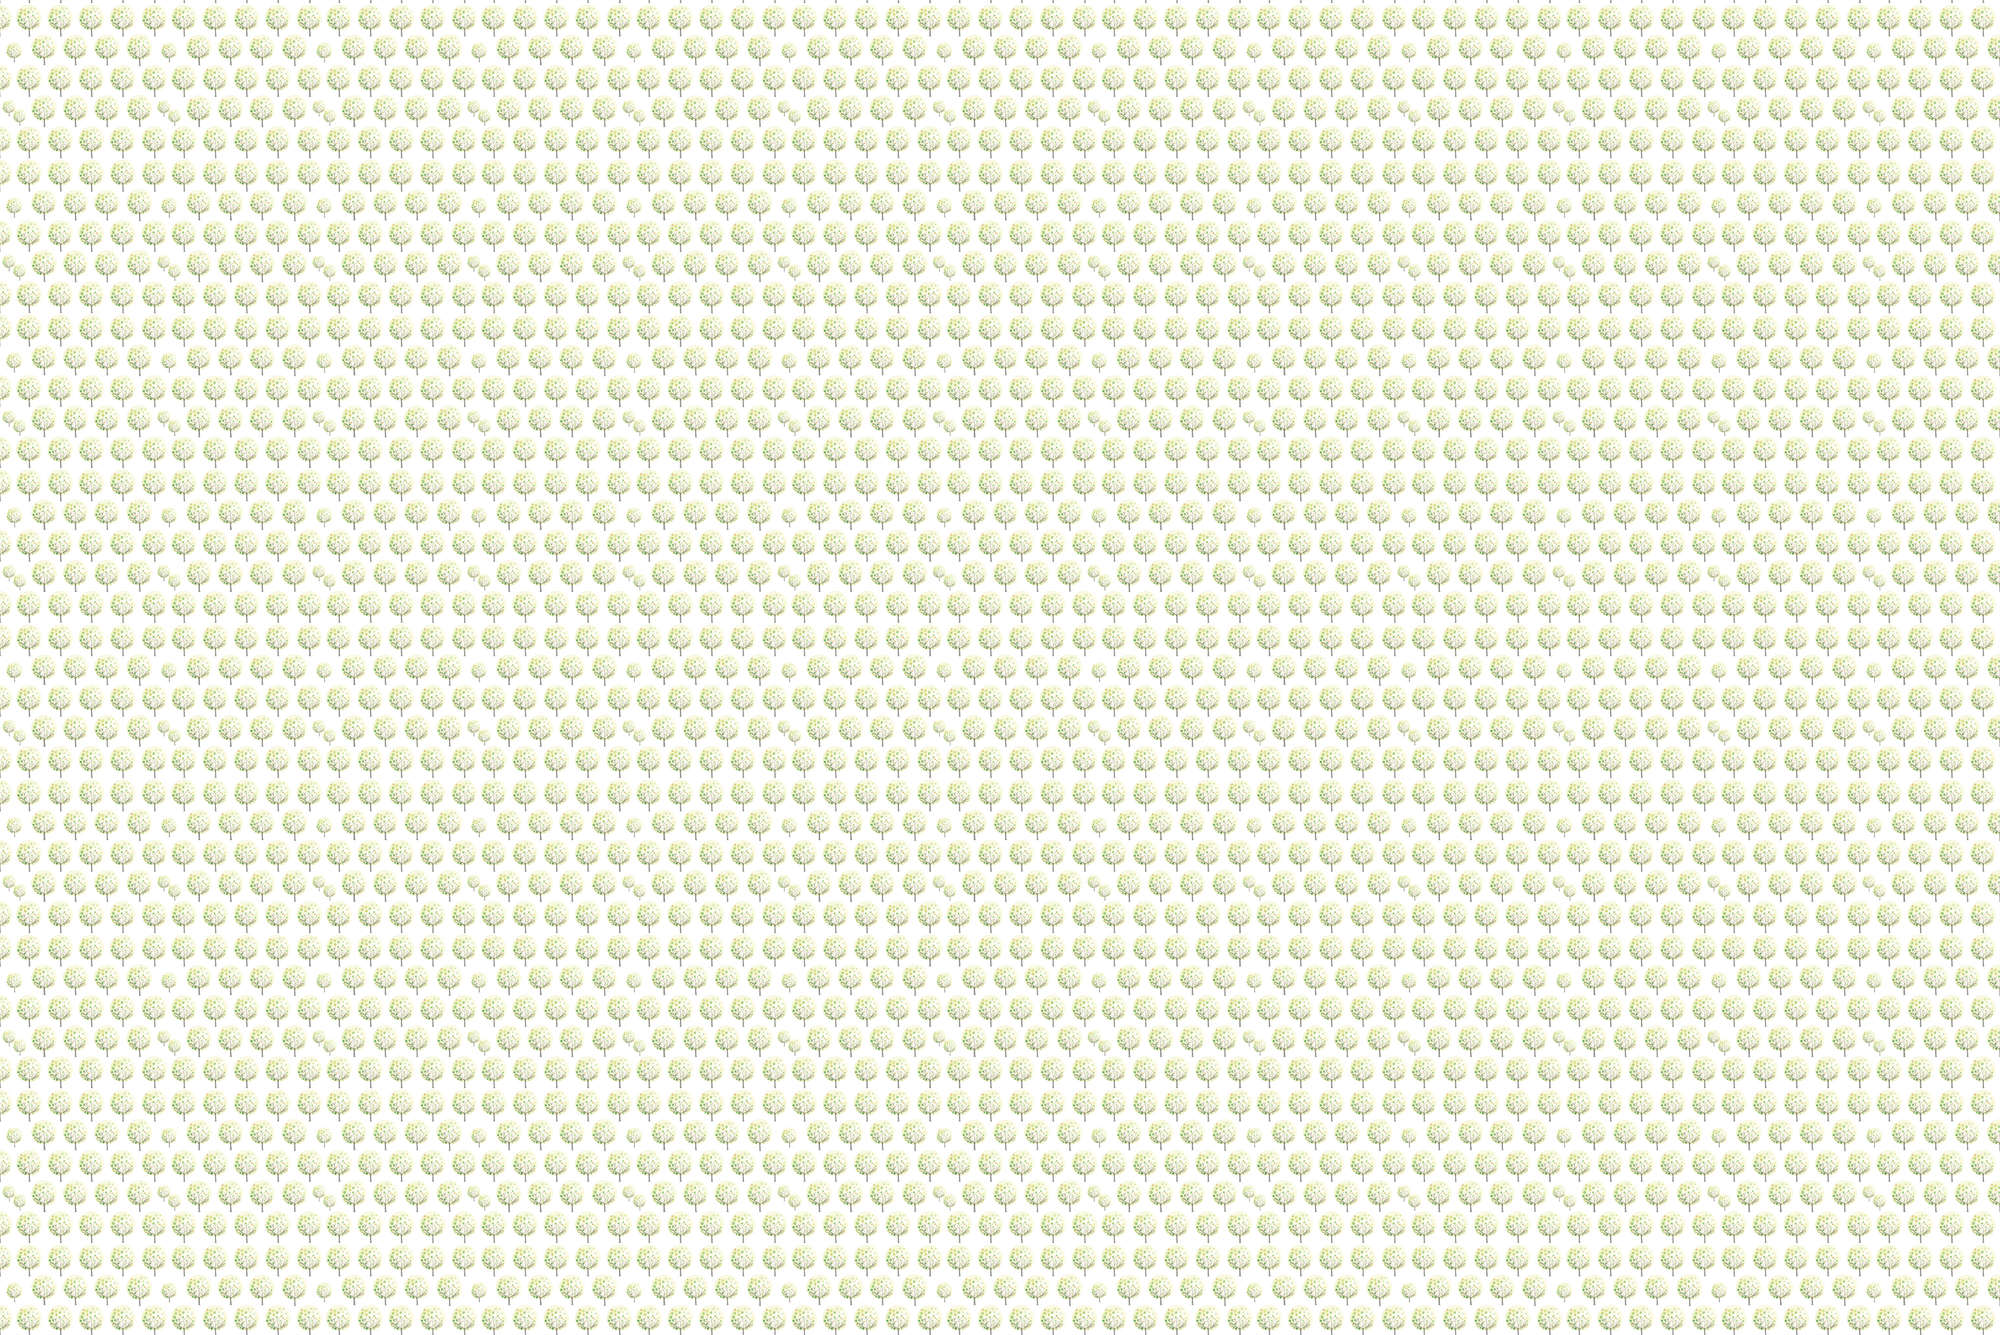             Design Behang Bospatroon in Groen op Witte Achtergrond op Premium Glad Vlies
        